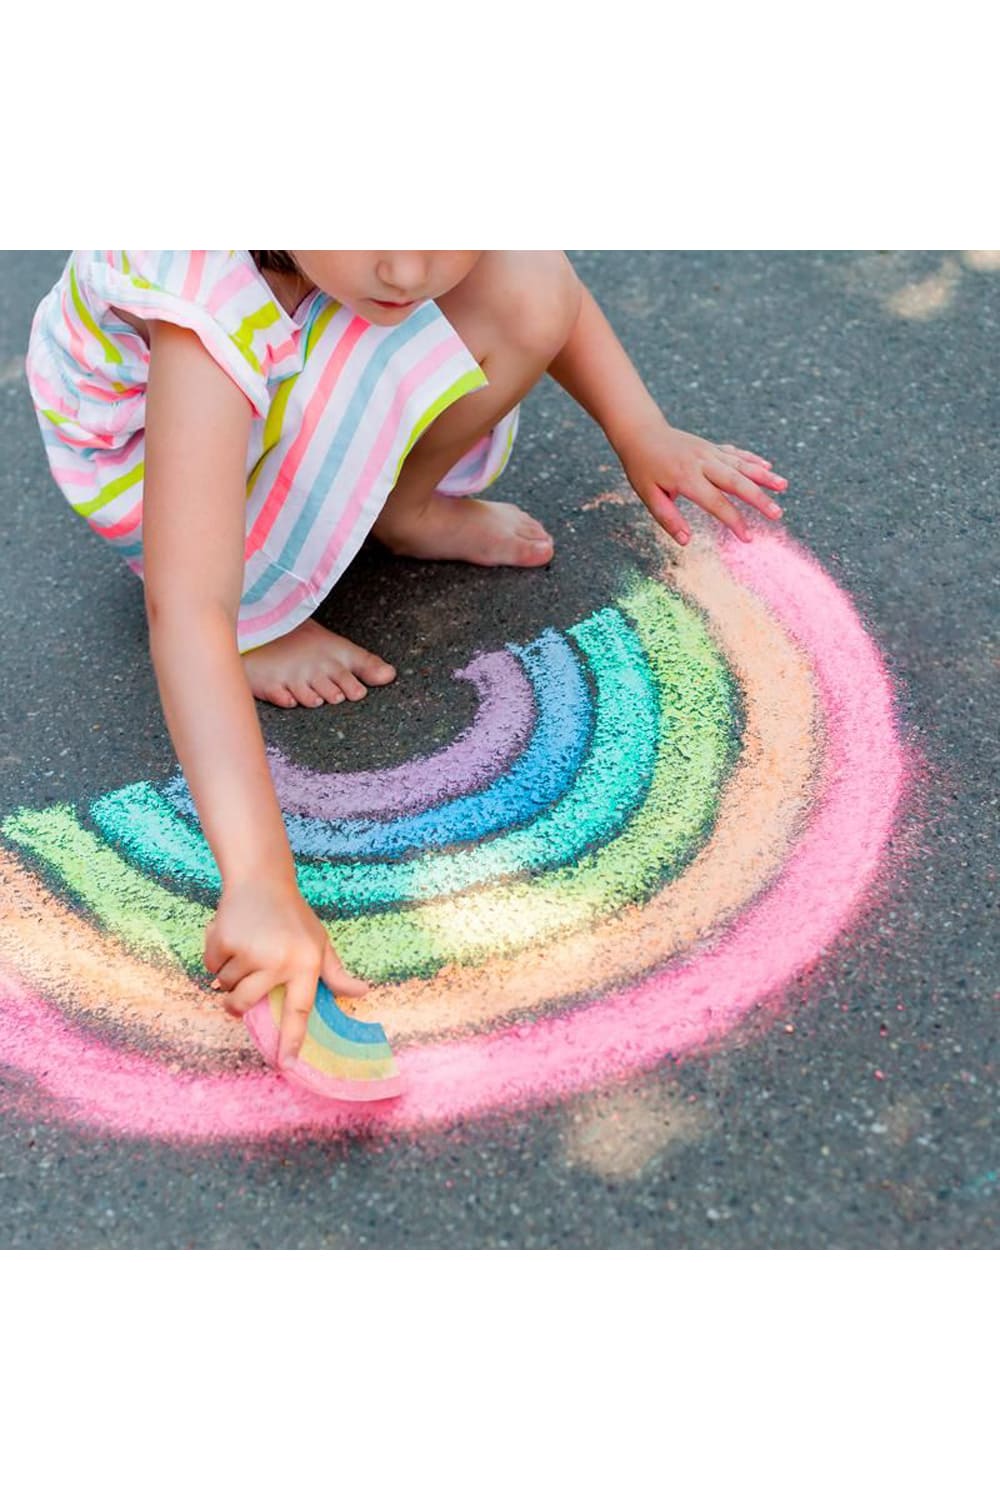 4 Farben in handlicher Regnbogen-Form. Regenbogen Strassenmalkreide. Perfektes Kindergeschenk zur Sommerzeit.